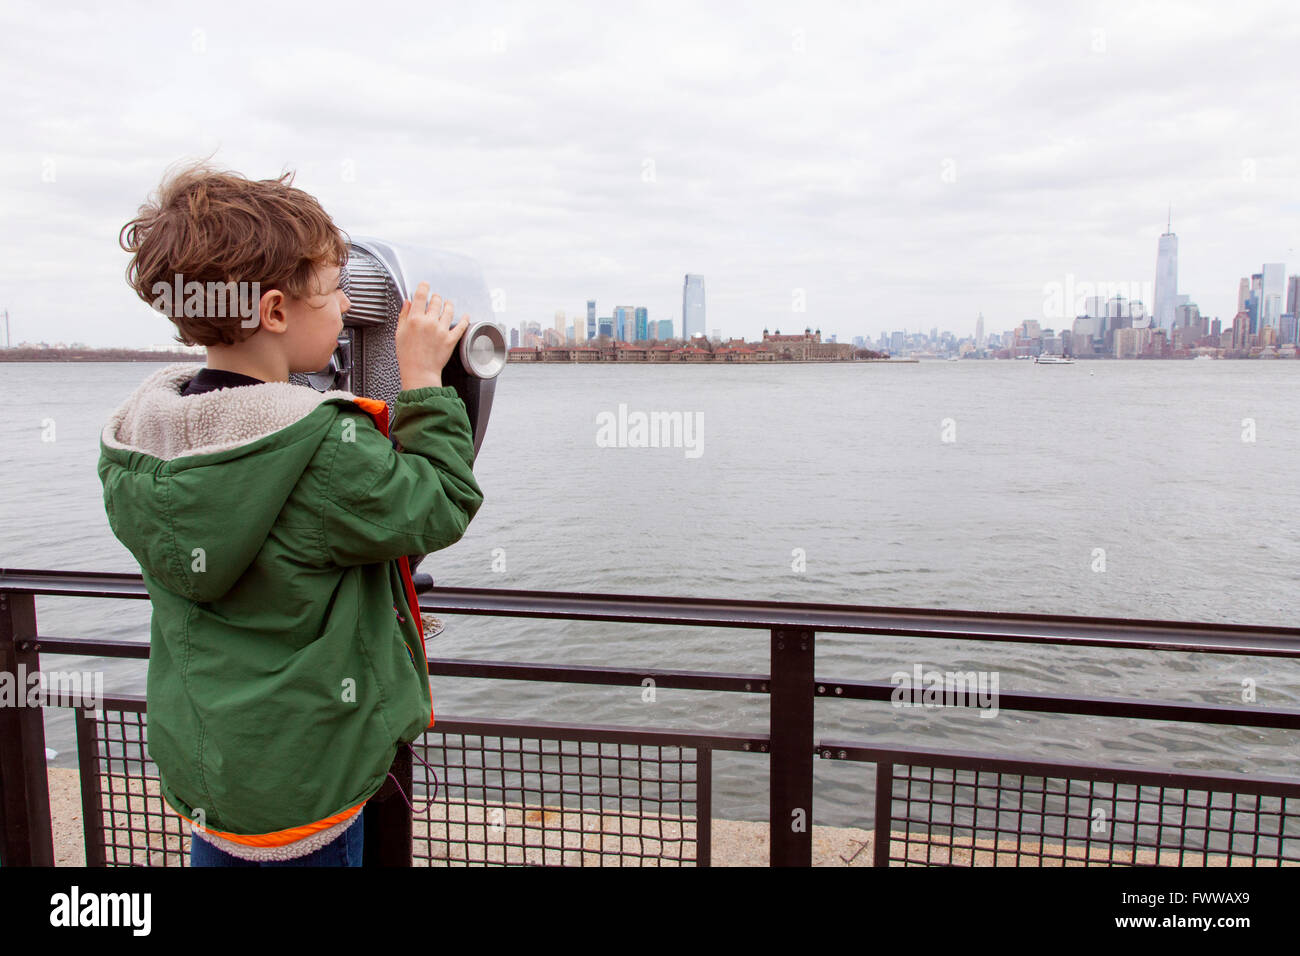 Un garçon de six ans à l'aide d'une paire de jumelles à monnayeur à Liberty Island, New York, États-Unis d'Amérique. Banque D'Images